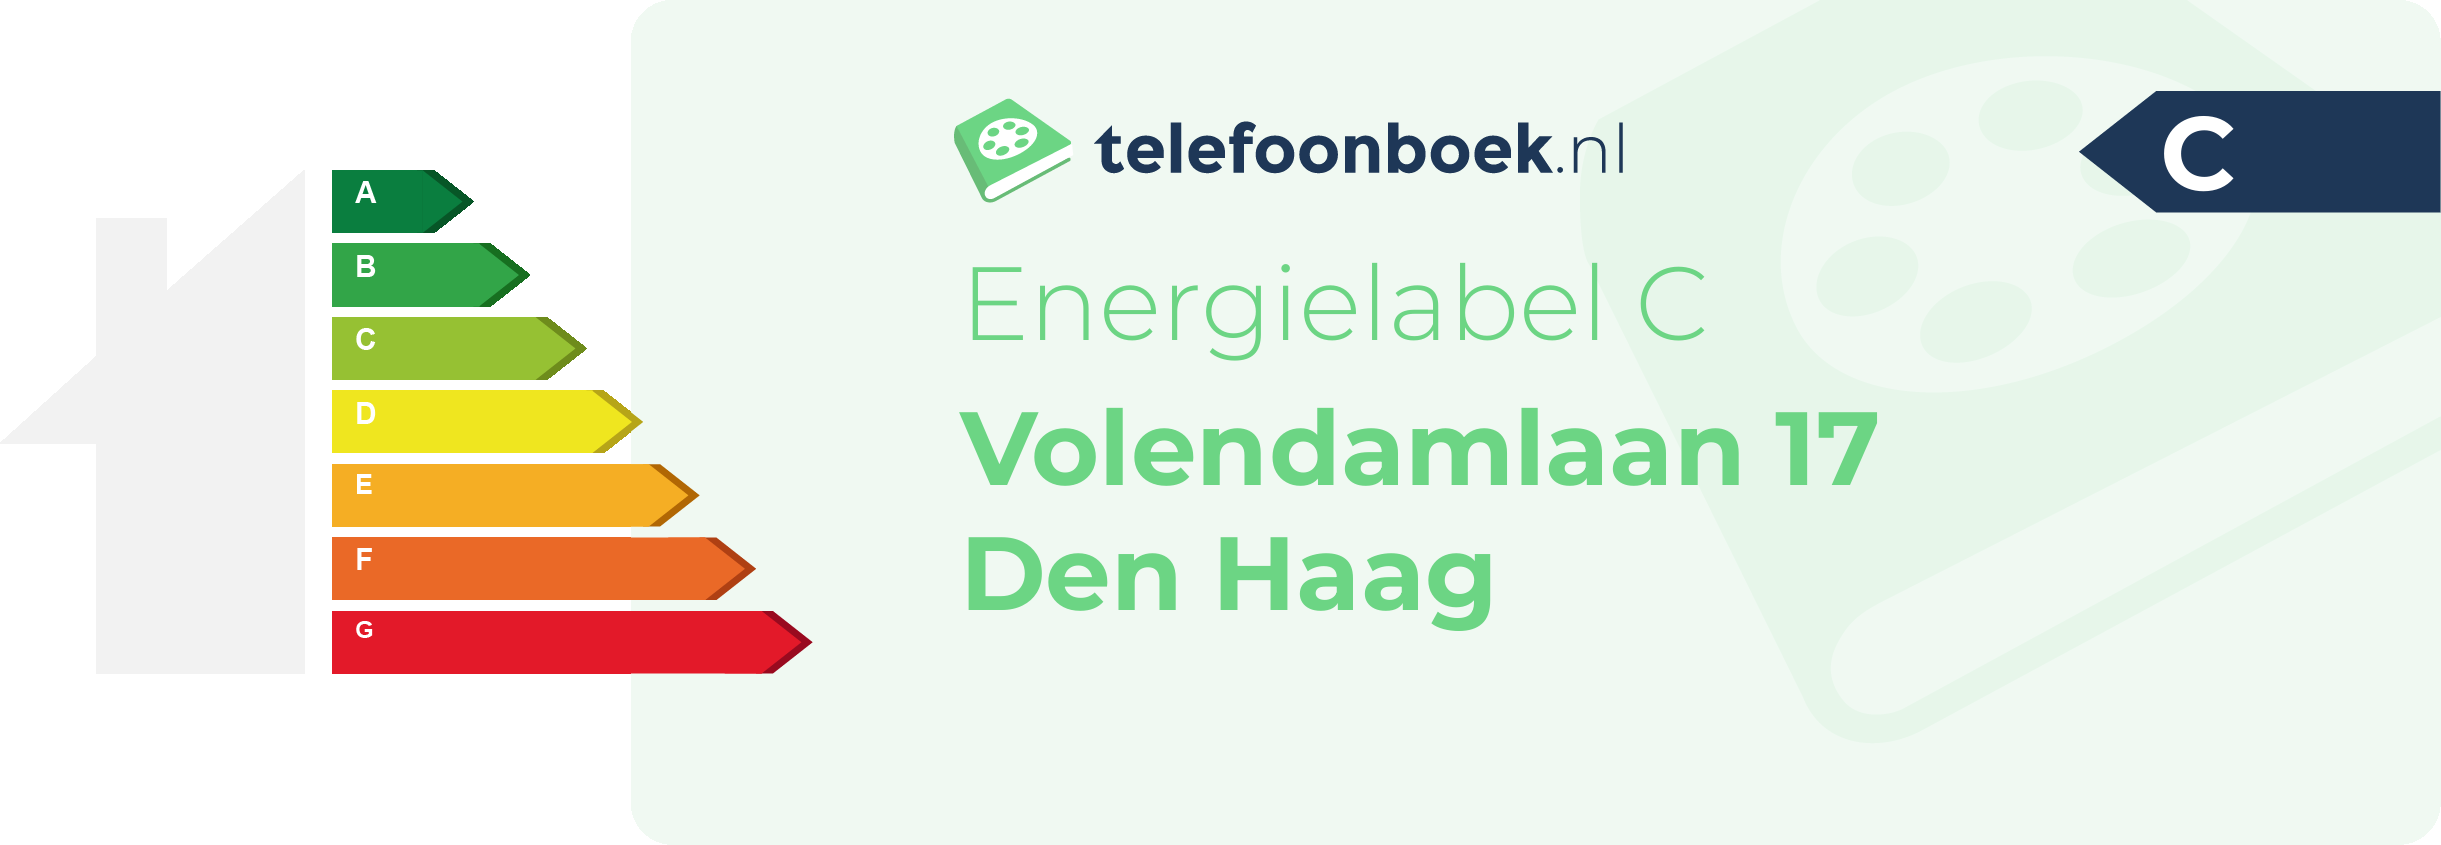 Energielabel Volendamlaan 17 Den Haag